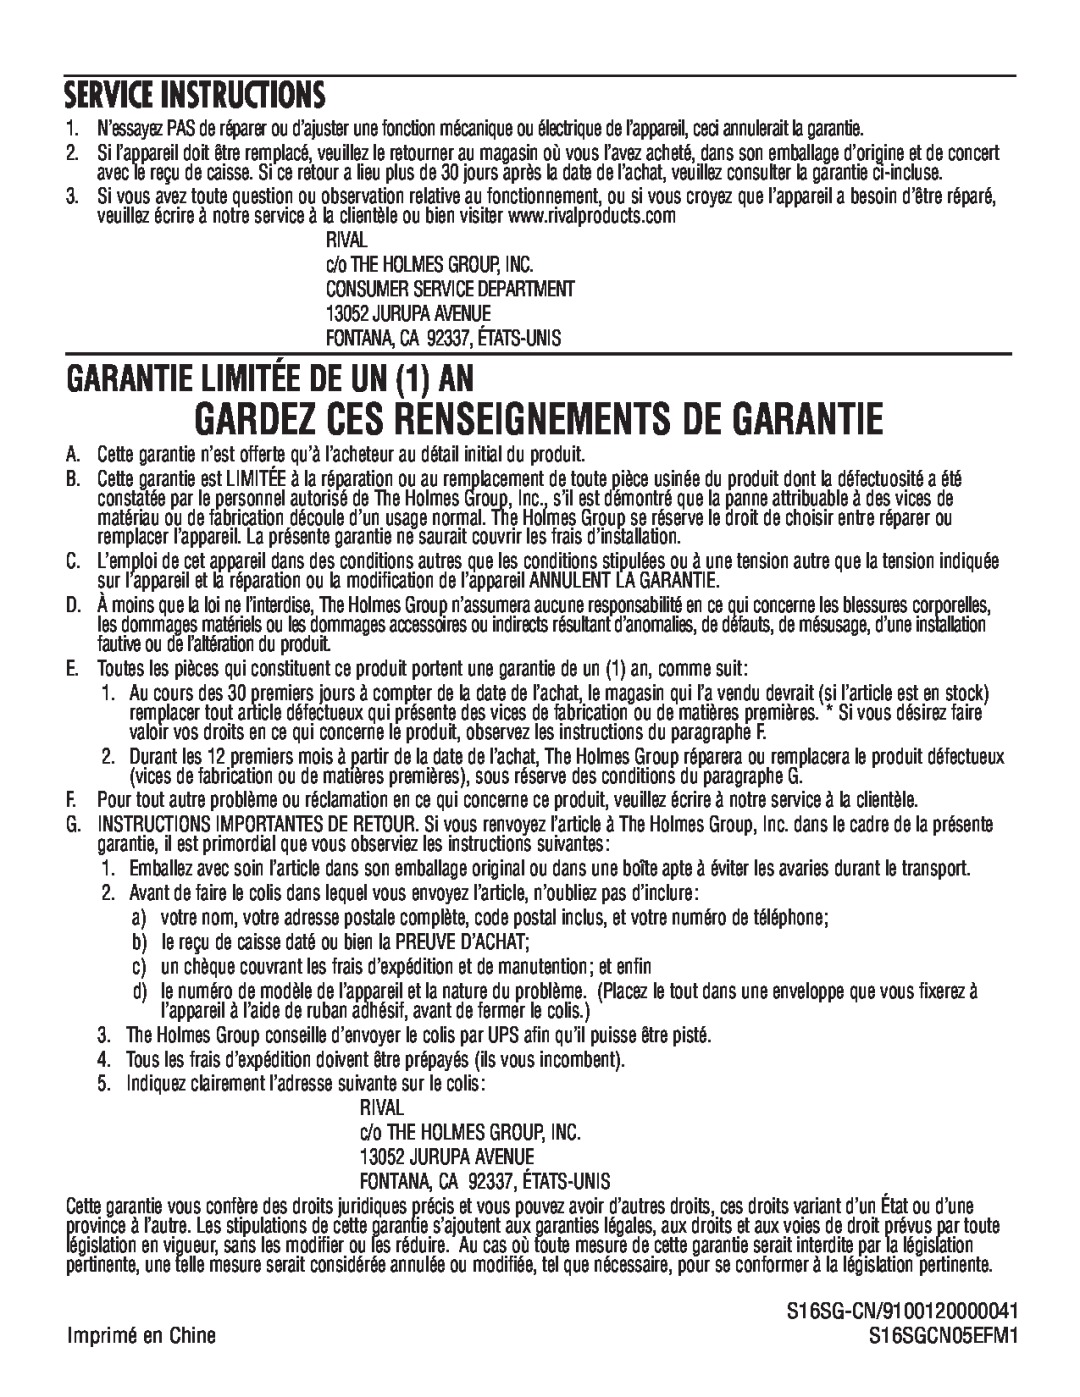 Rival S16SG-CN manual GARANTIE LIMITÉE DE UN 1 AN, Gardez Ces Renseignements De Garantie, Service Instructions 